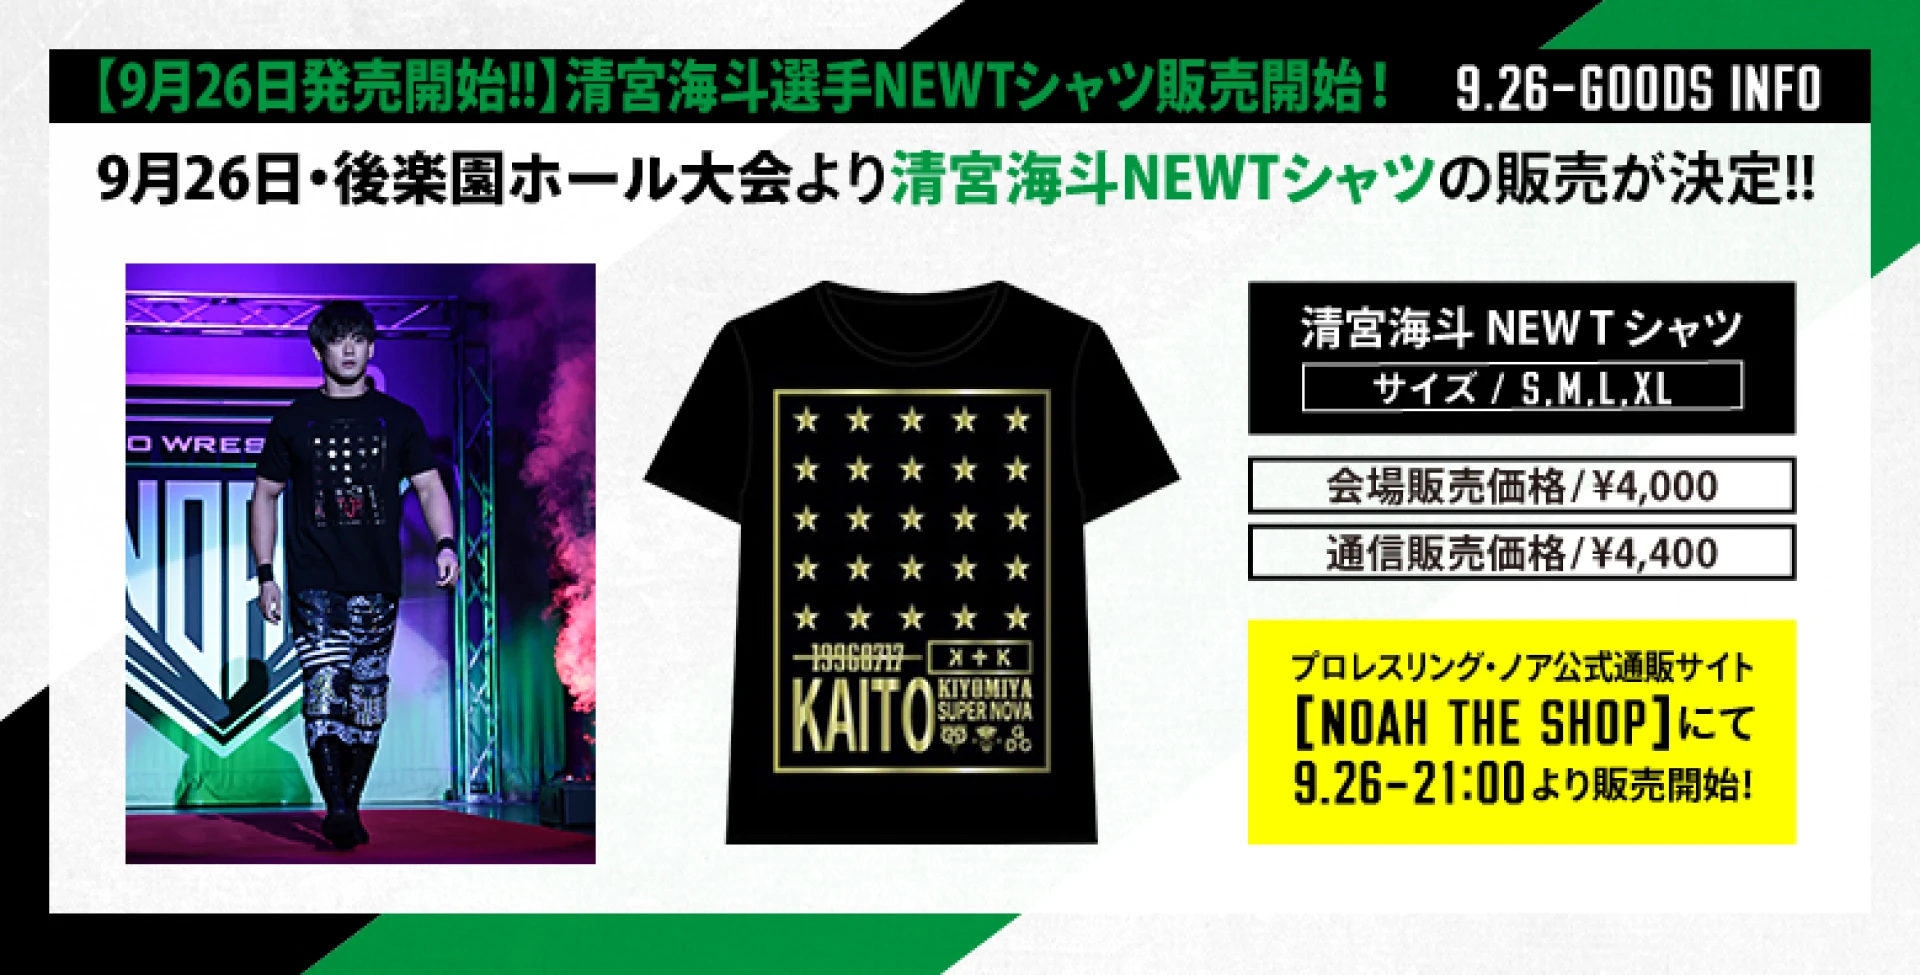 【9月26日発売開始!!】清宮海斗選手NEWTシャツ販売開始のお知らせ